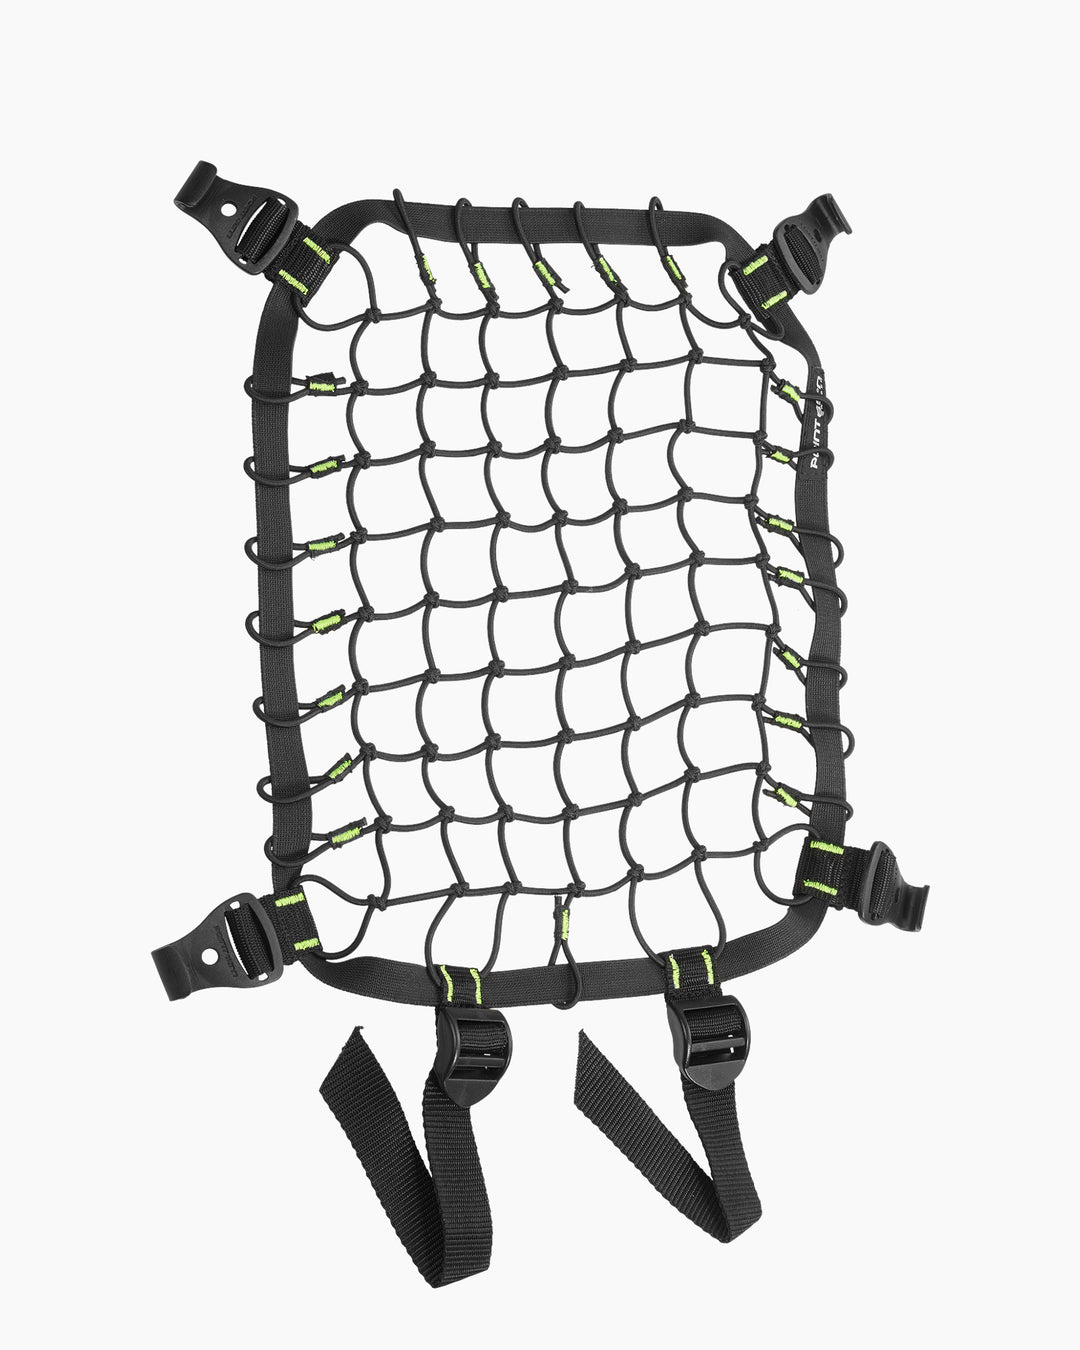 Boblbee Backpack Cargo Net 20L